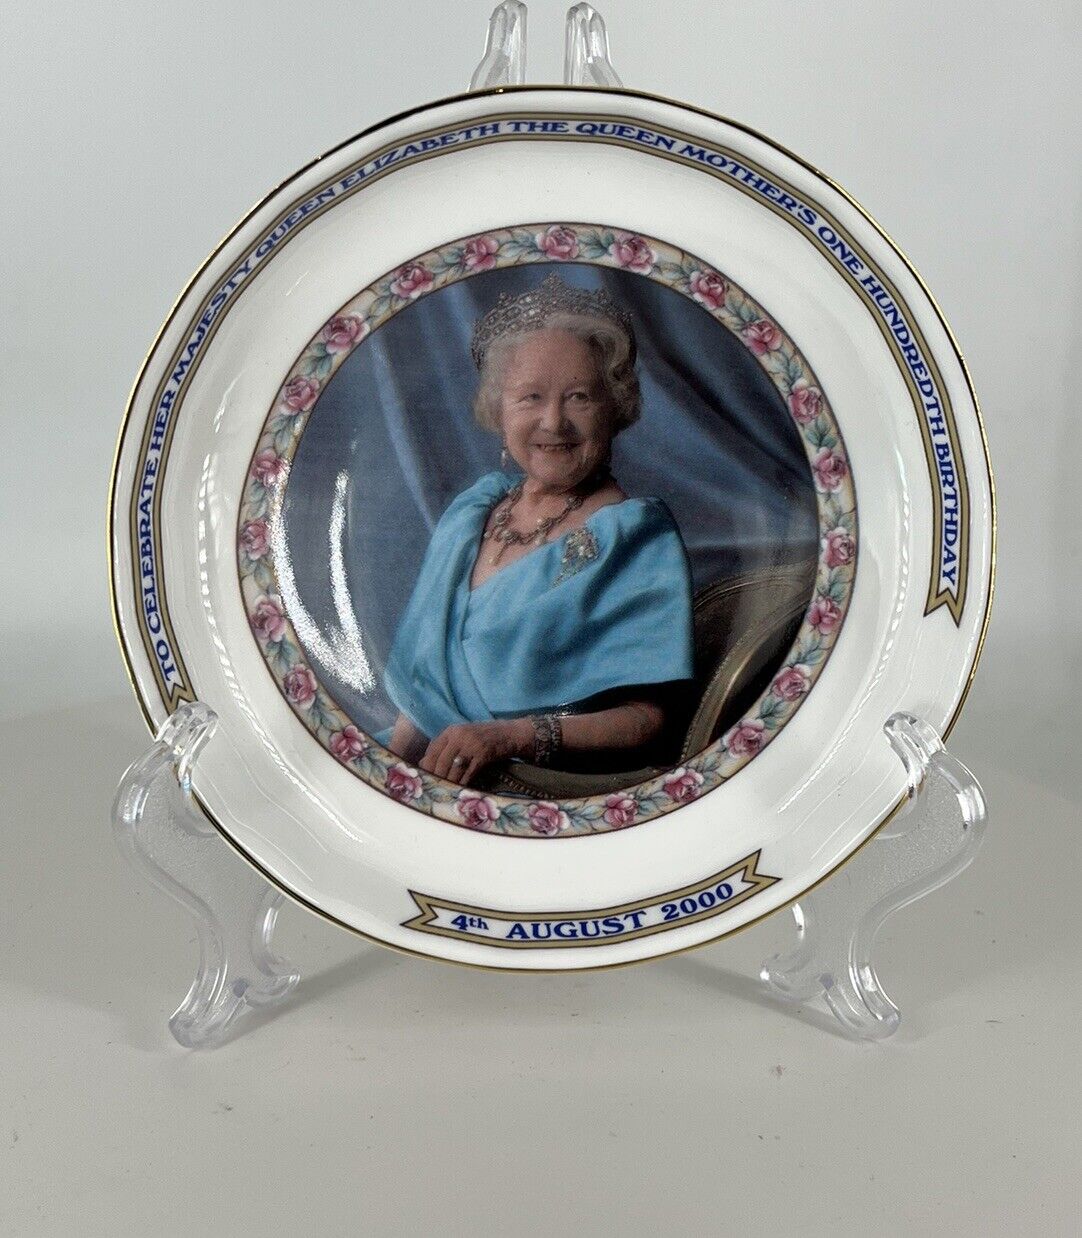 Queen Elizabeth 100th Birthday Plate by Aynsley